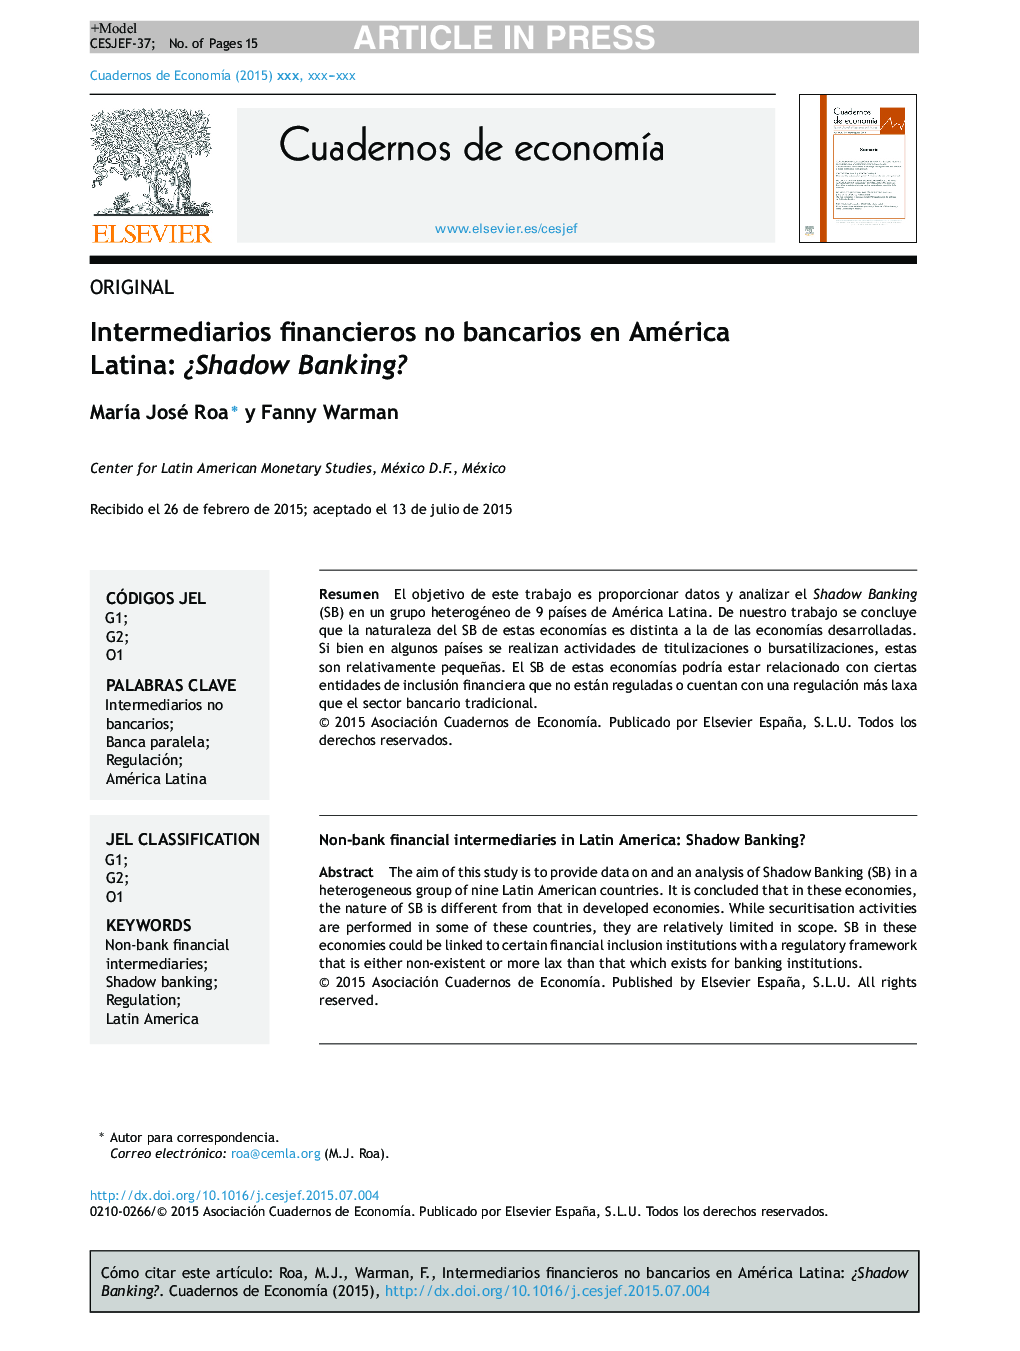 Intermediarios financieros no bancarios en América Latina: Â¿Shadow Banking?